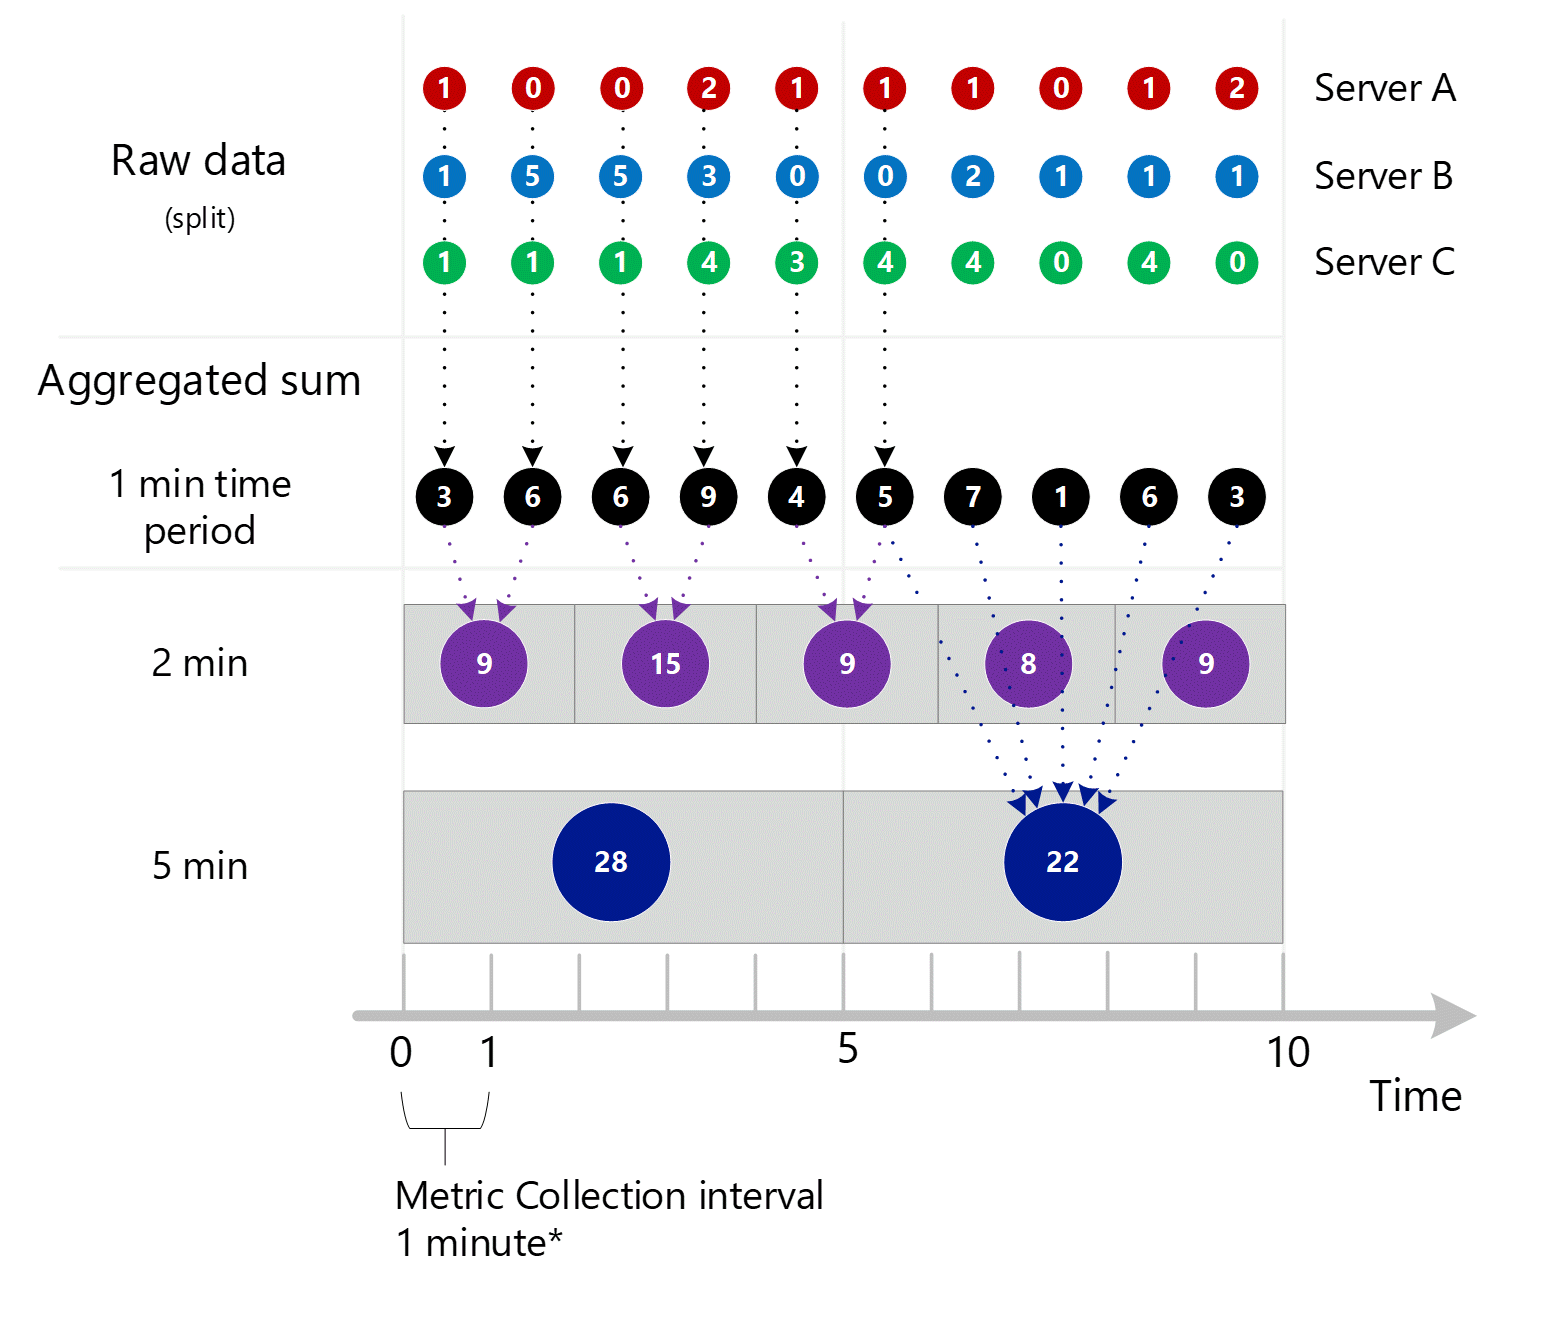 Zrzut ekranu przedstawiający konsolidację poprzednich 3 zrzutów ekranu. Wiele 1-minutowych zagregowanych wpisów w wymiarze serwera zagregowanych w 1-minutowych, 2-minutowych i 5-minutowych odstępach czasu. Serwer A, B i C pokazany indywidualnie